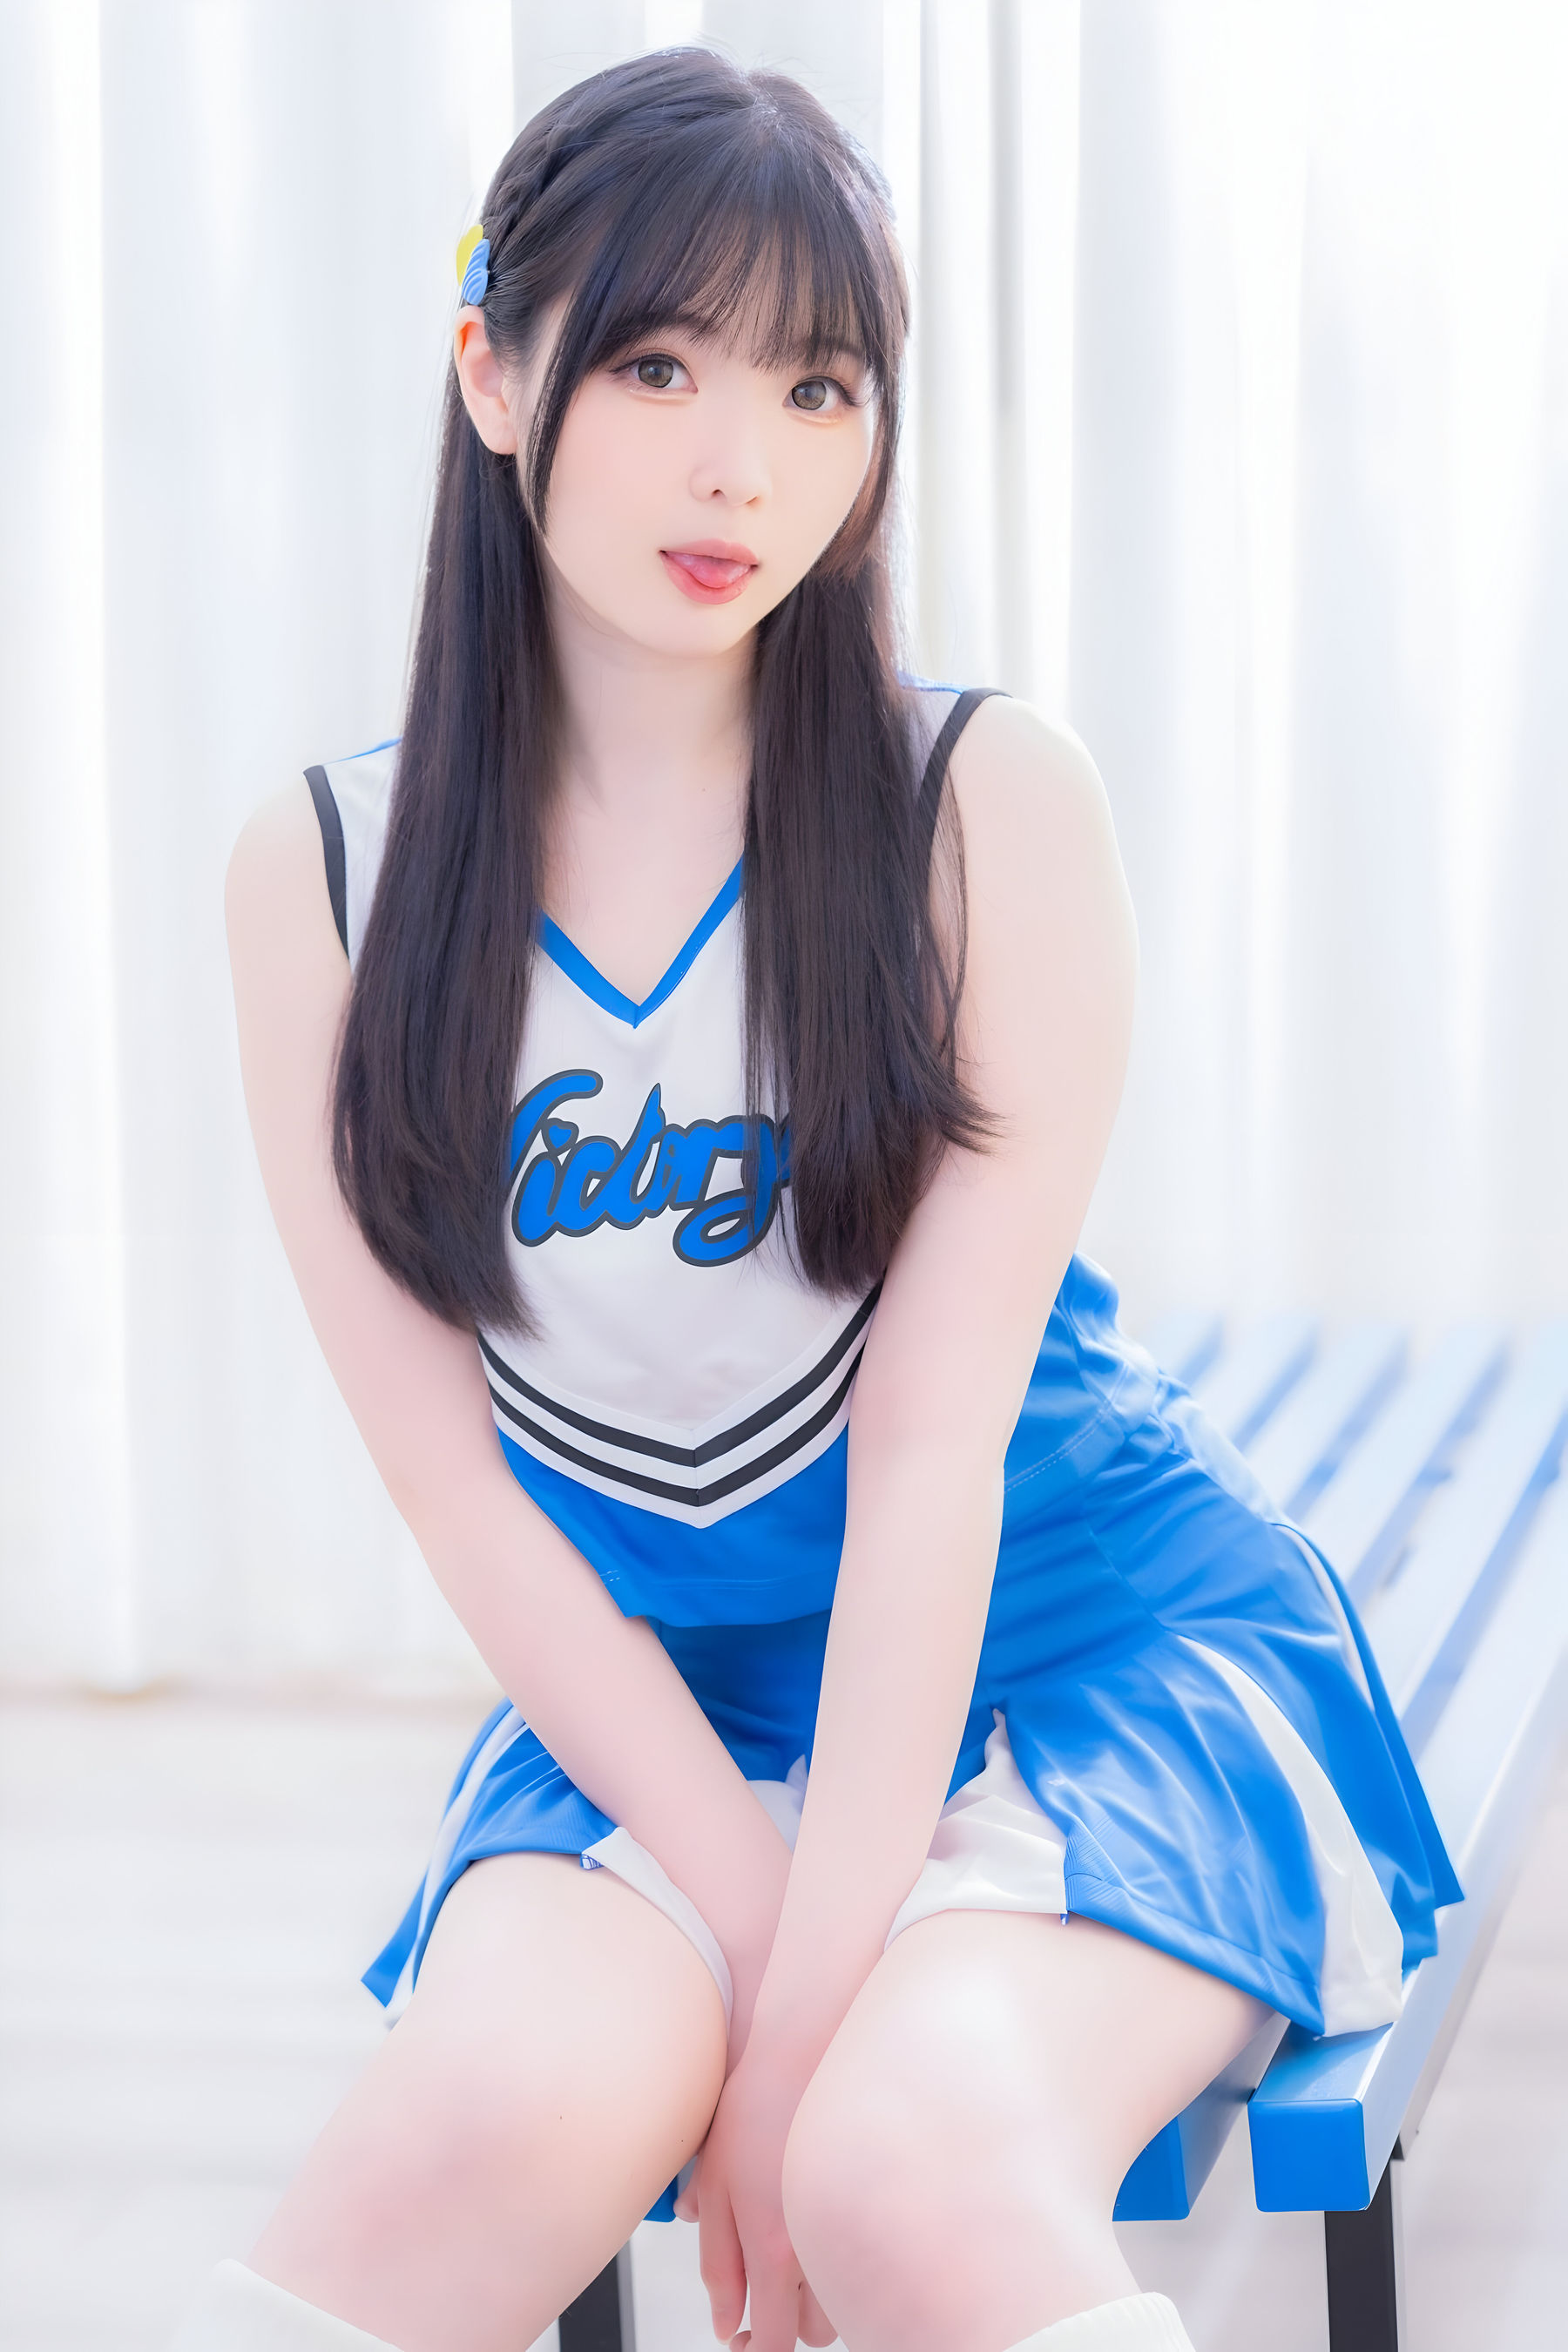 微博妹纸霜月shimo - Cheerleader/(21P)